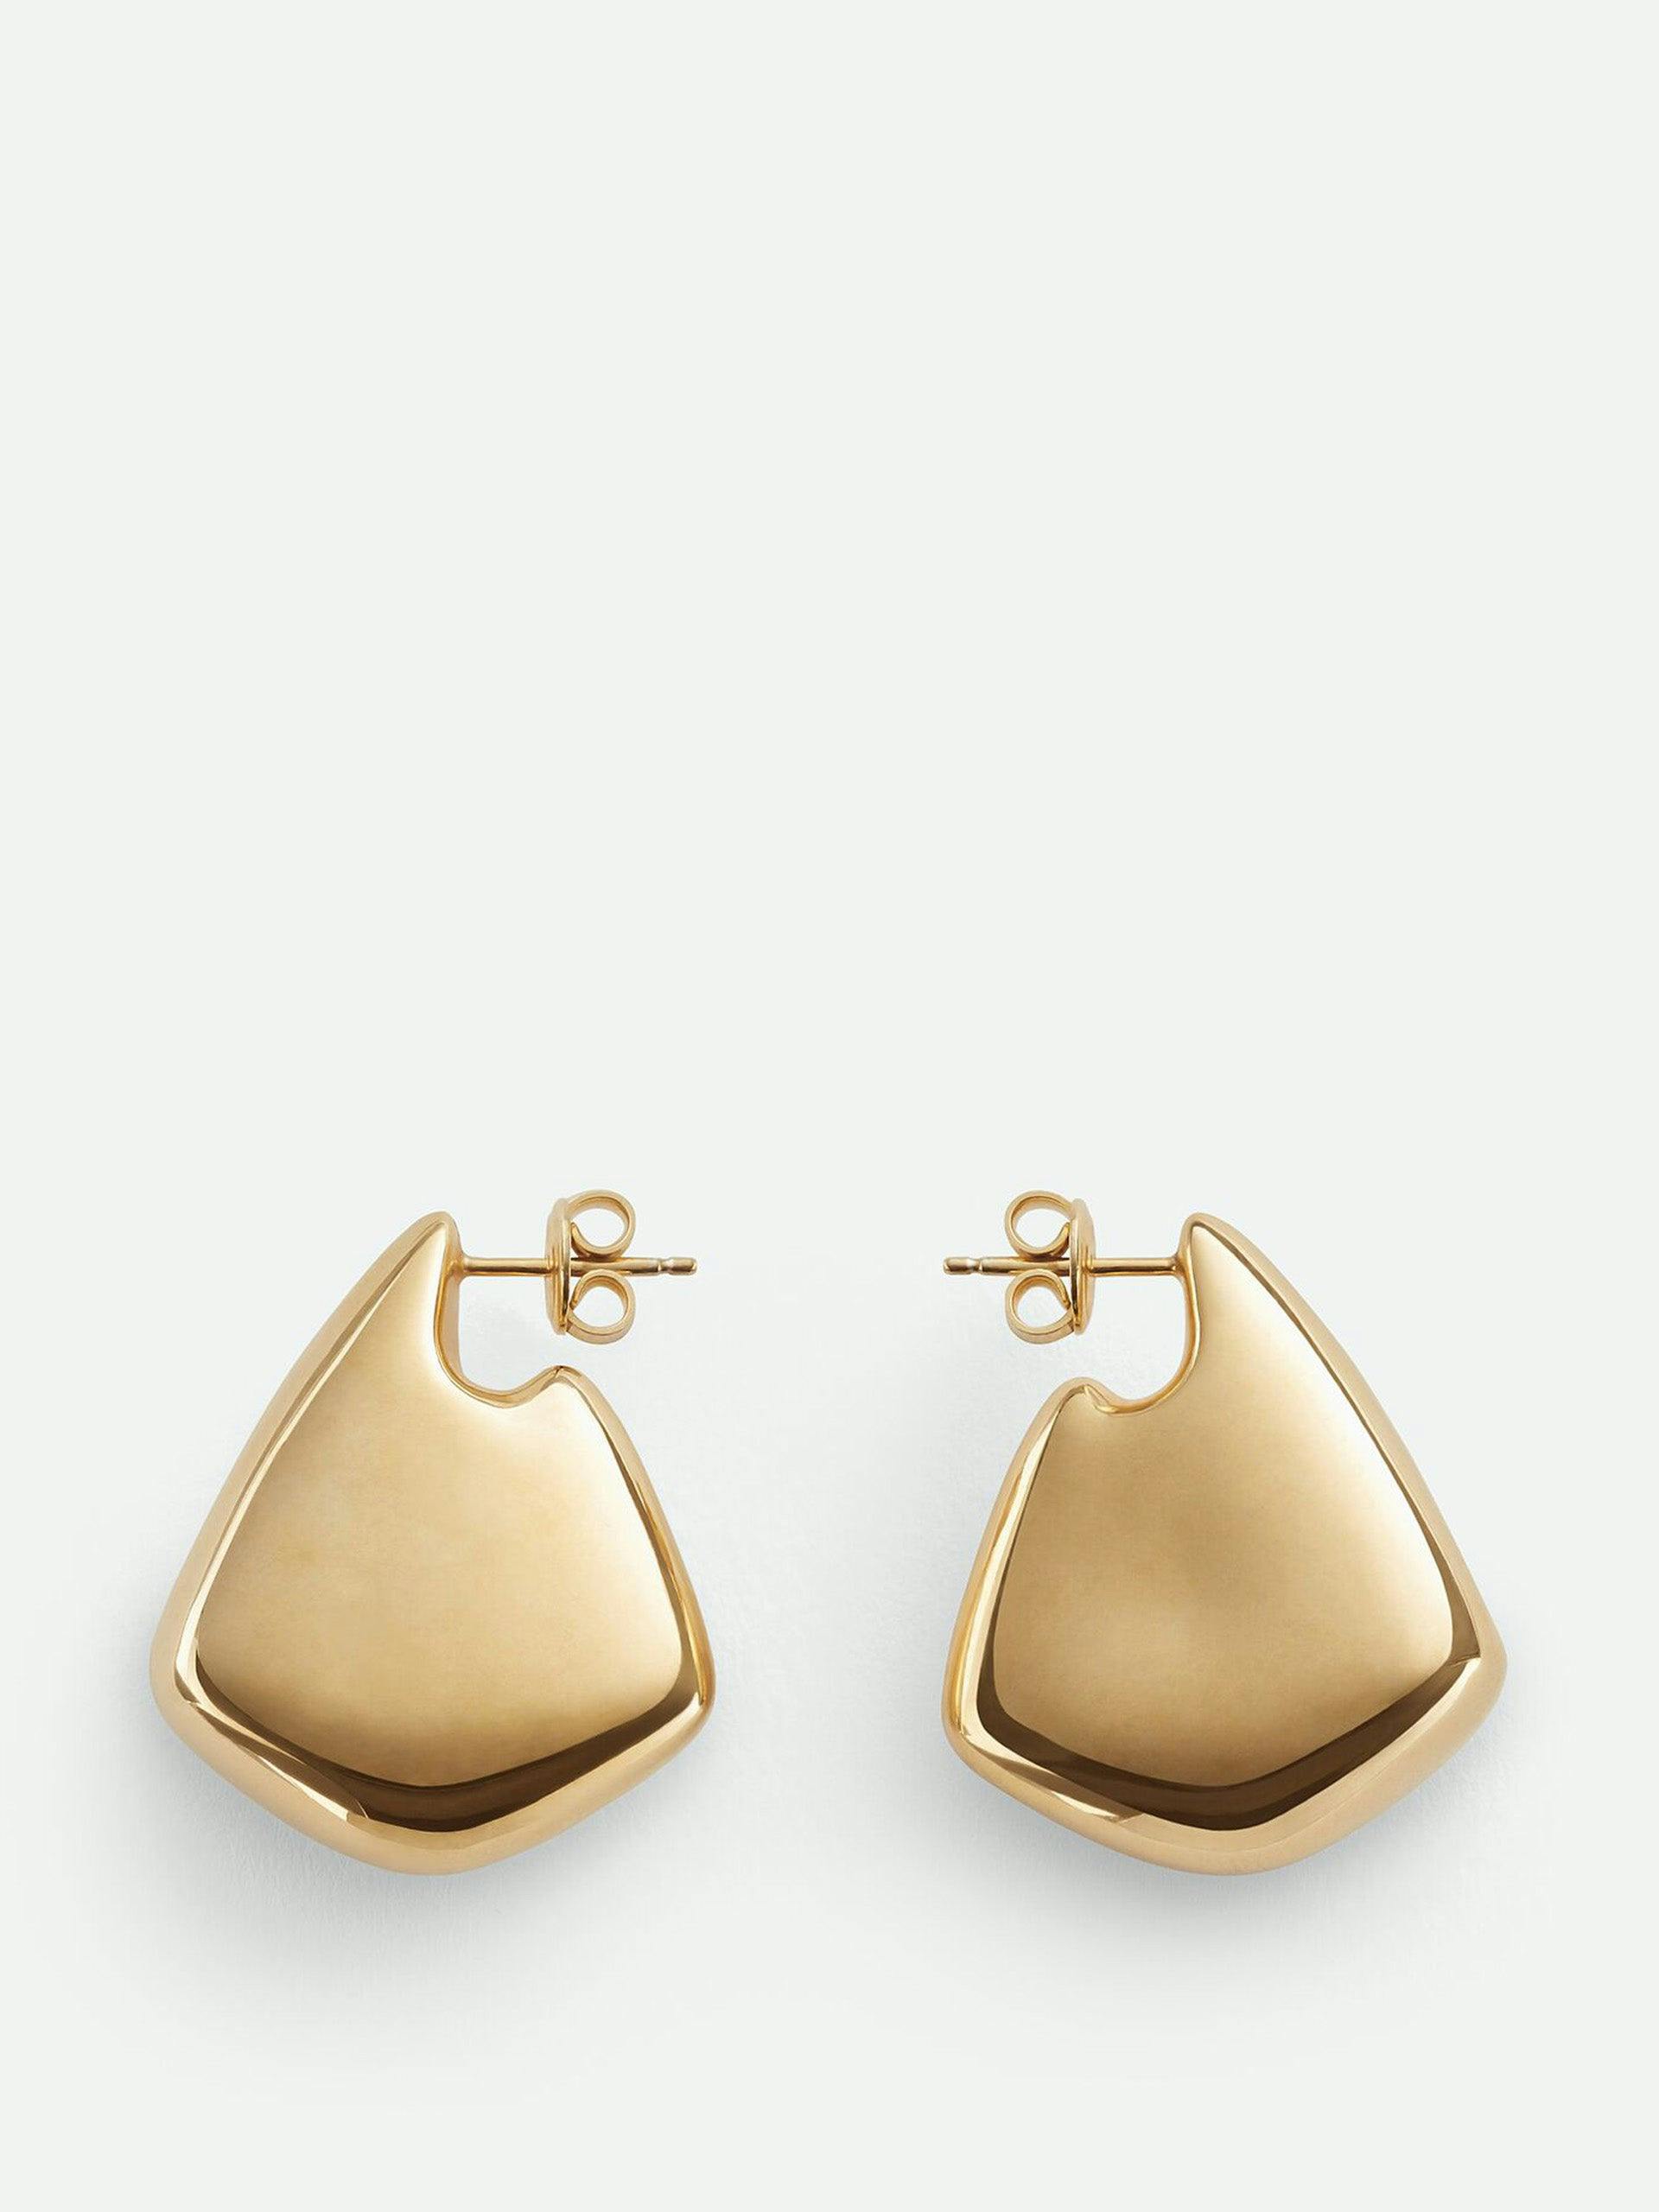 Small Fin earrings